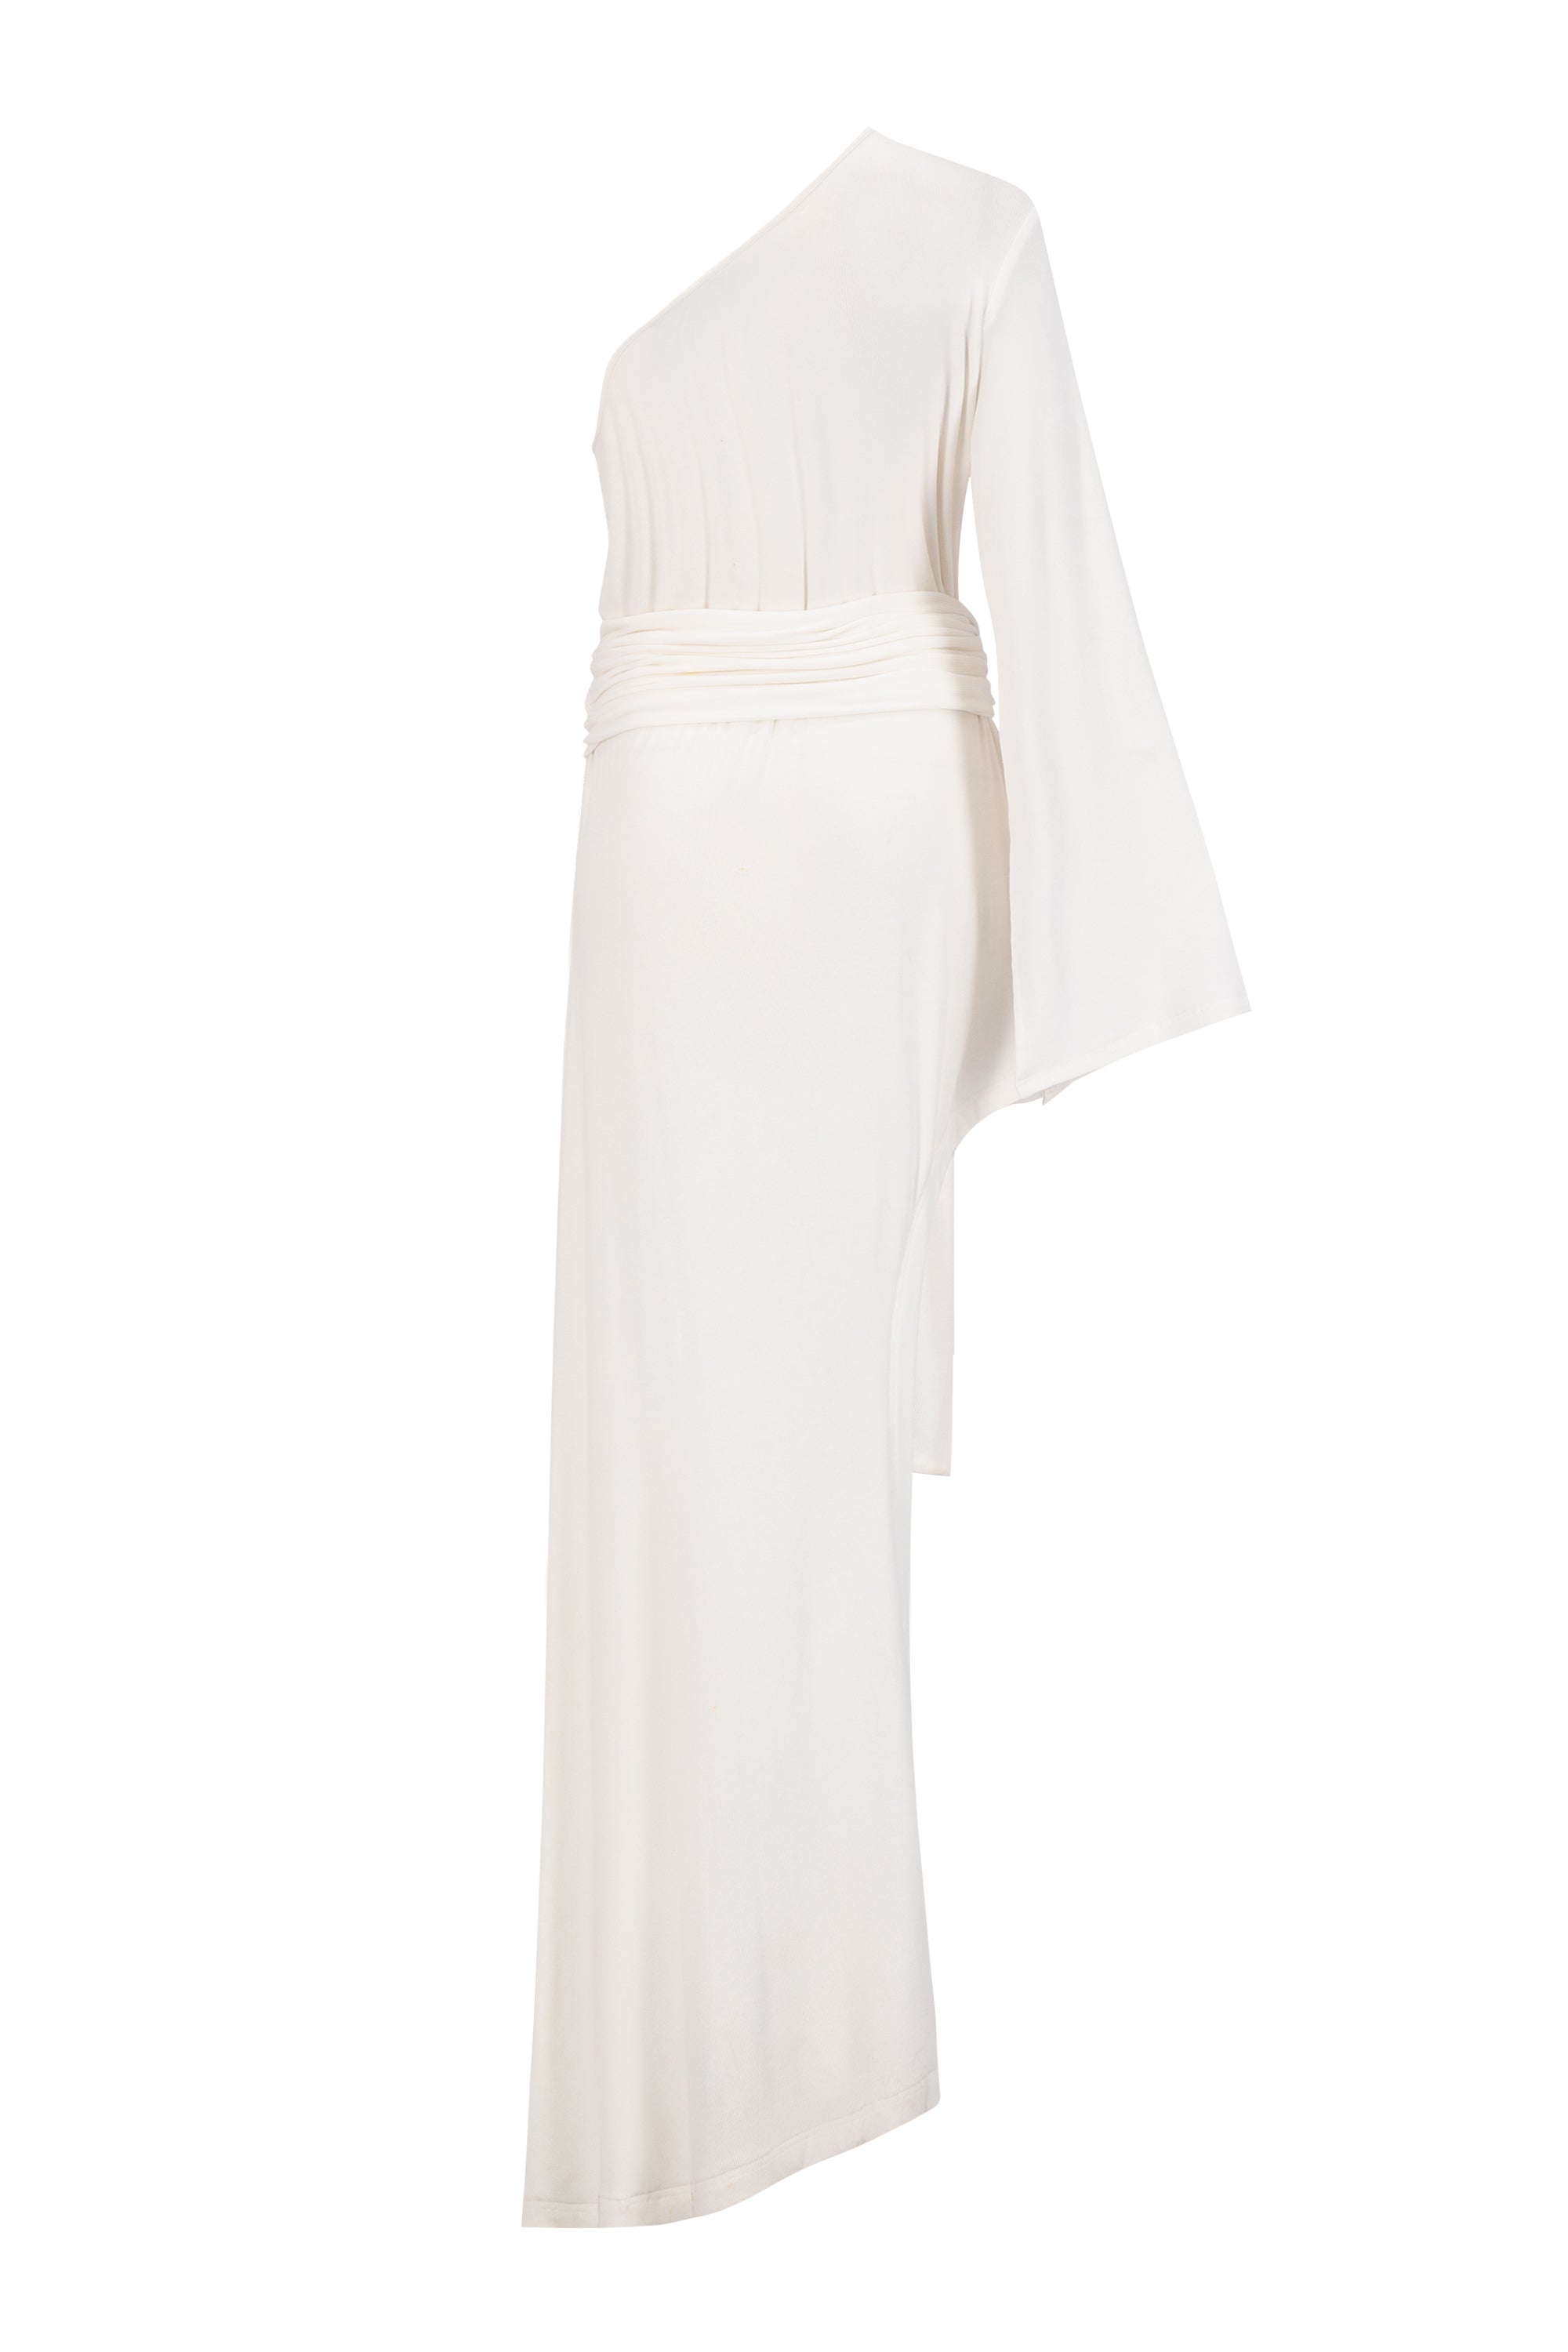 Calypso Dress White